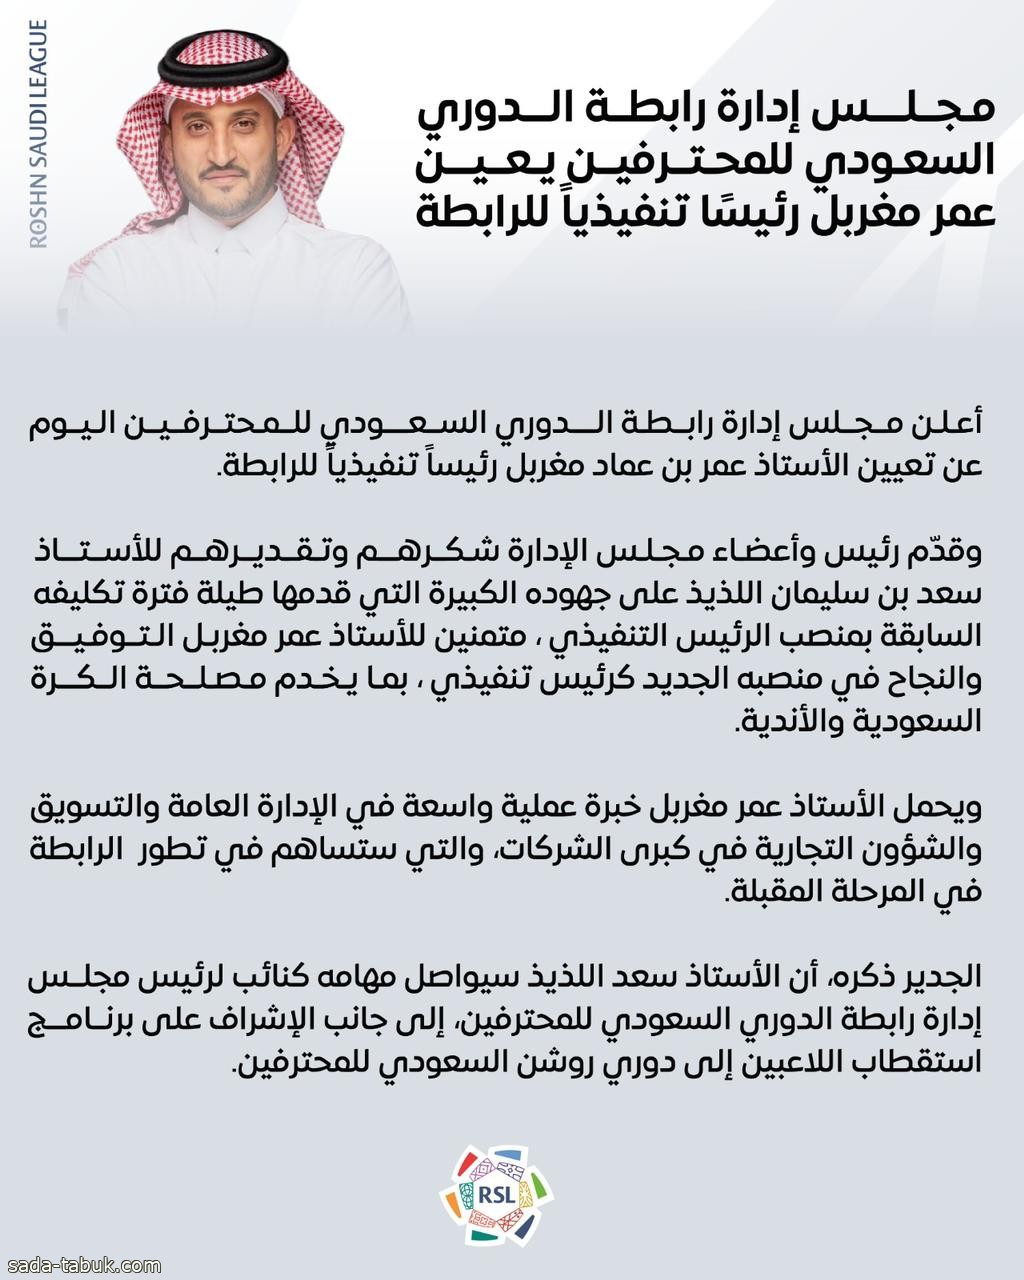 مجلس إدارة رابطة الدوري السعودي للمحترفين يُعين عمر مغربل رئيسًا تنفيذيًا للرابطة